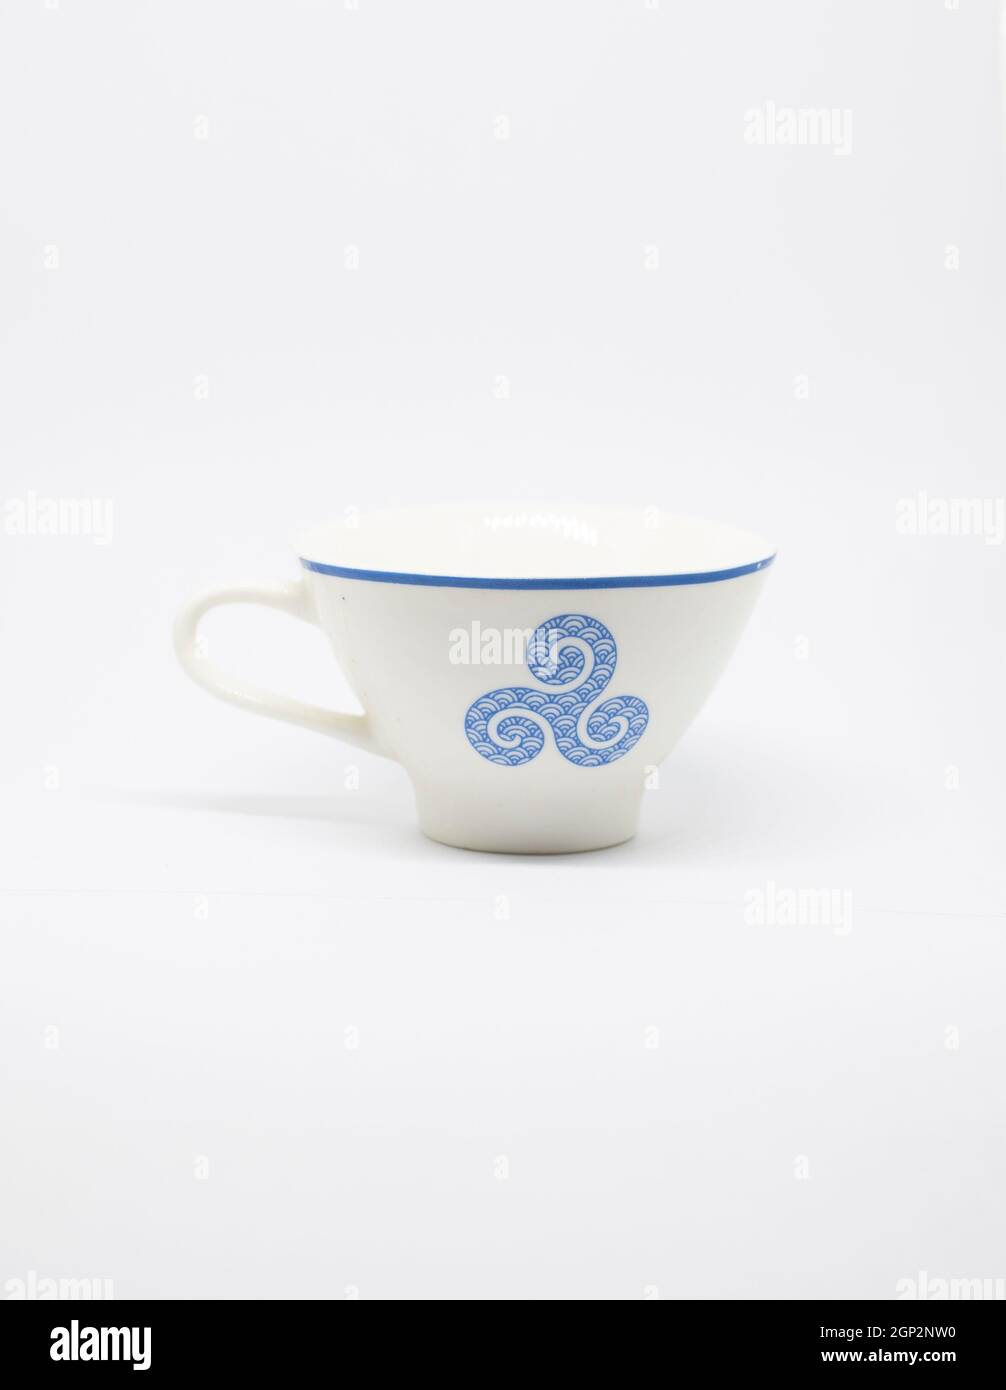 tasse blanche et bleue avec un motif breton bleu sur fond blanc. Banque D'Images